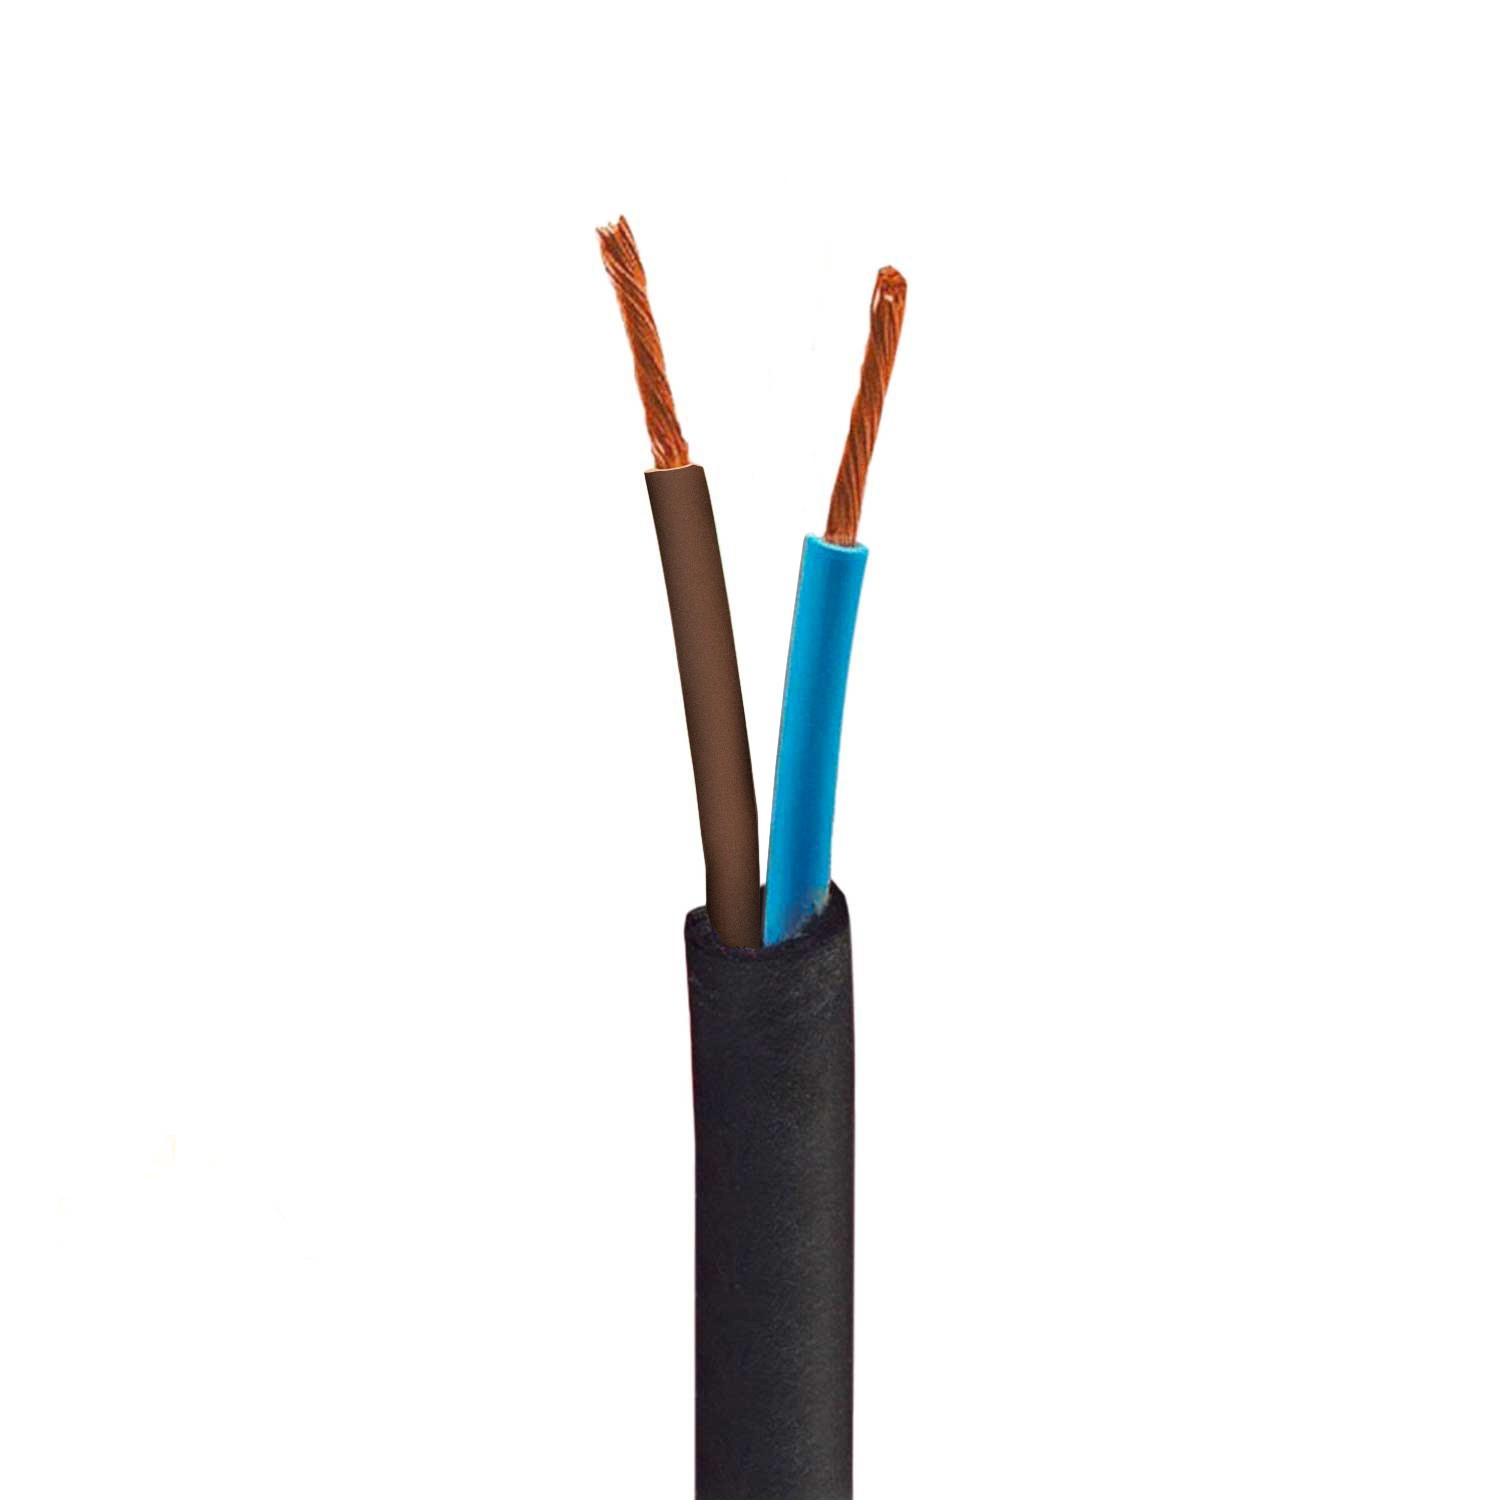 Outdoor-Elektrokabel mit Textilummantelung in schwarz SM04, rund, UV-beständig - kompatibel mit Eiva Outdoor IP65